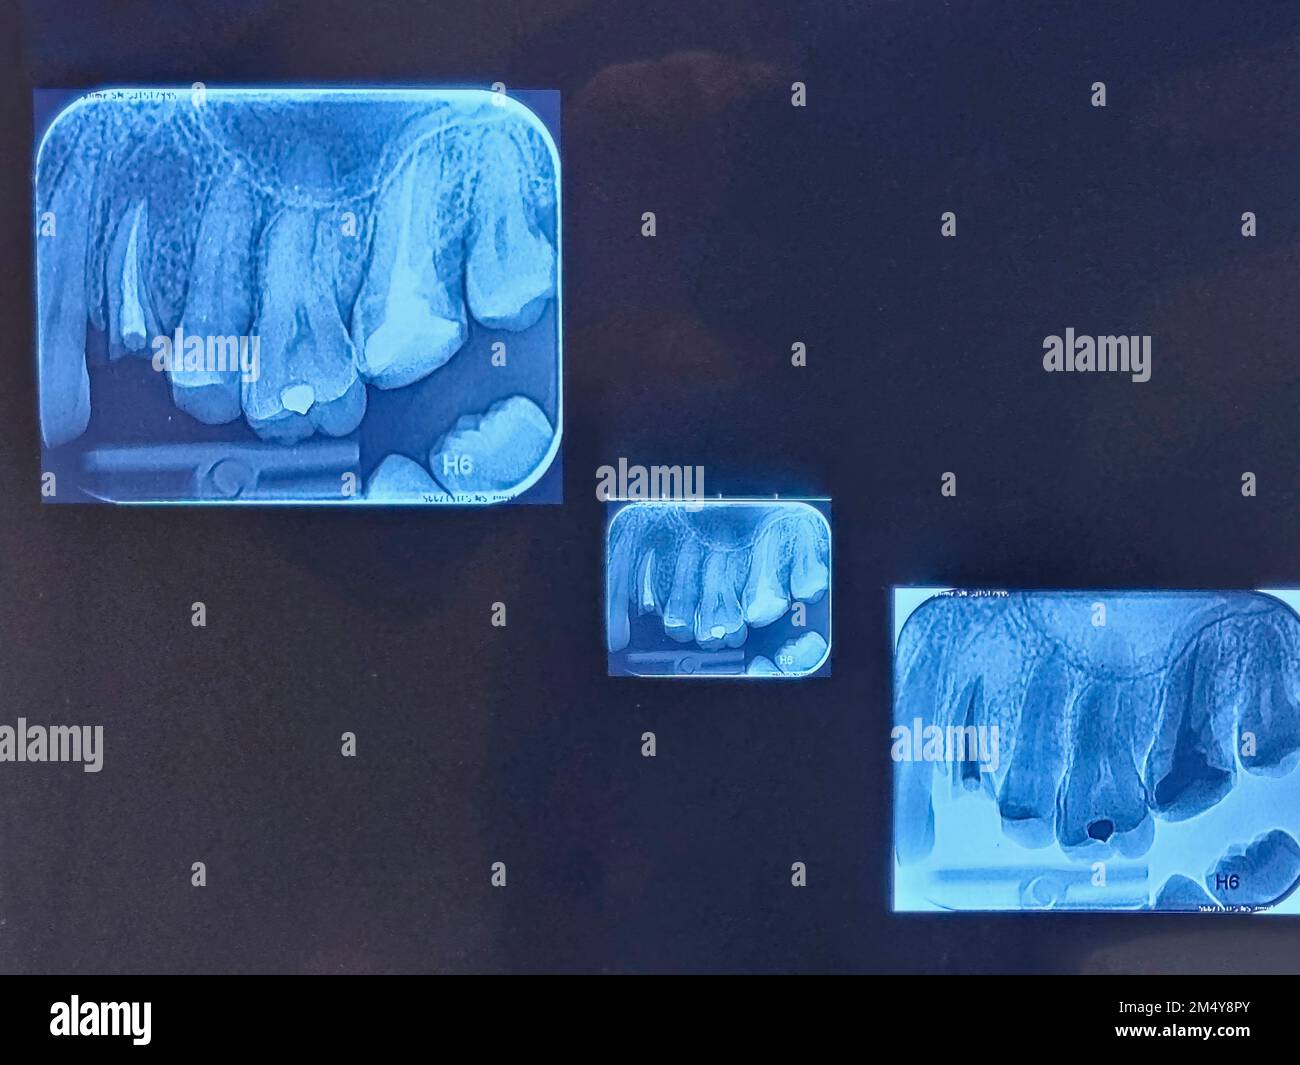 Dental x-ray image, teeth x-ray film. Stock Photo